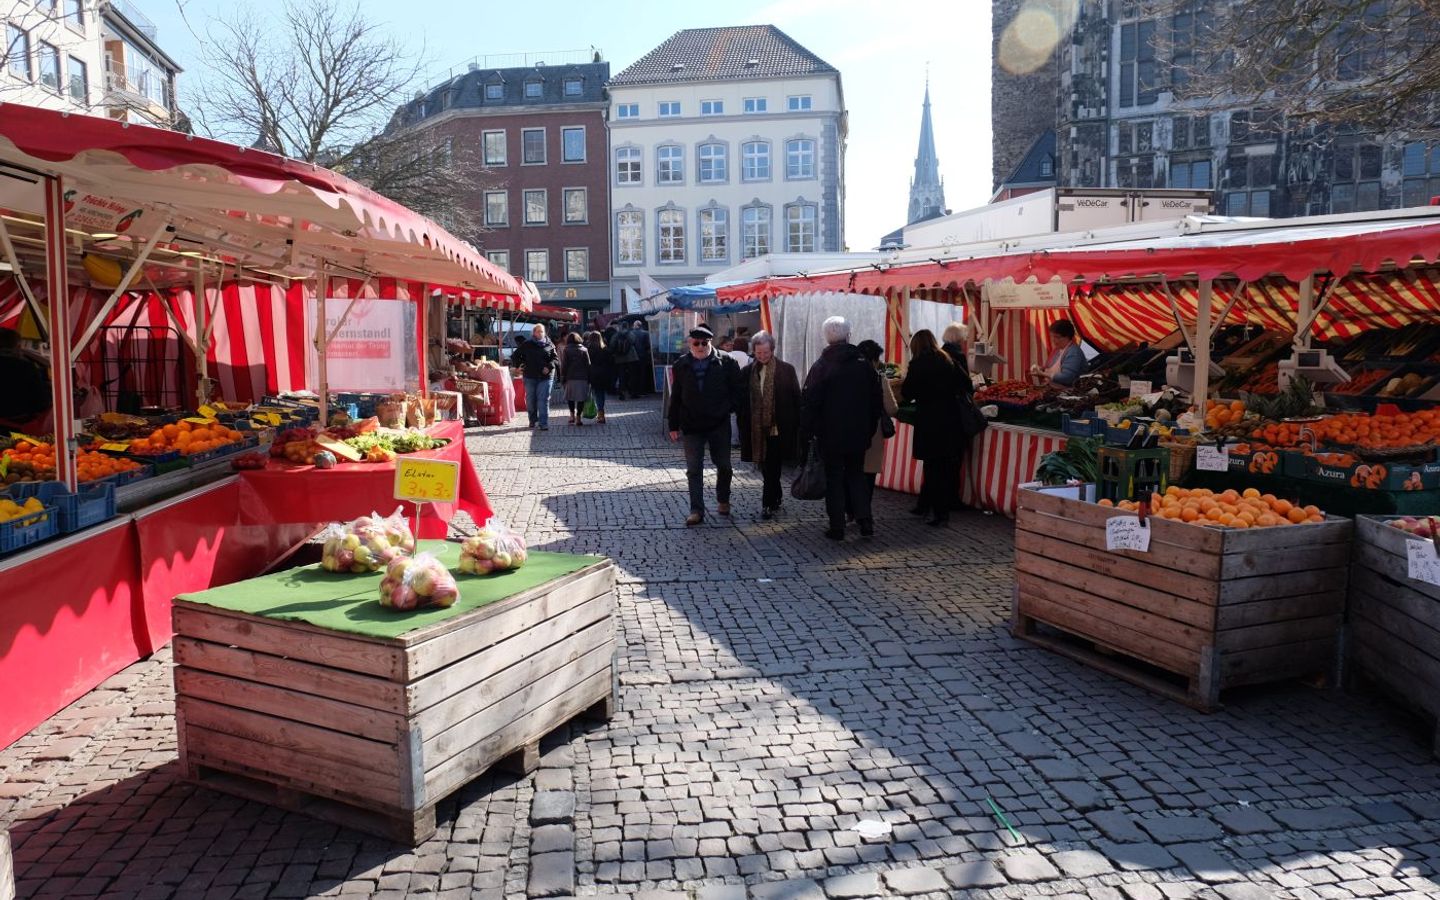 Weekly markt at Münsterplatz